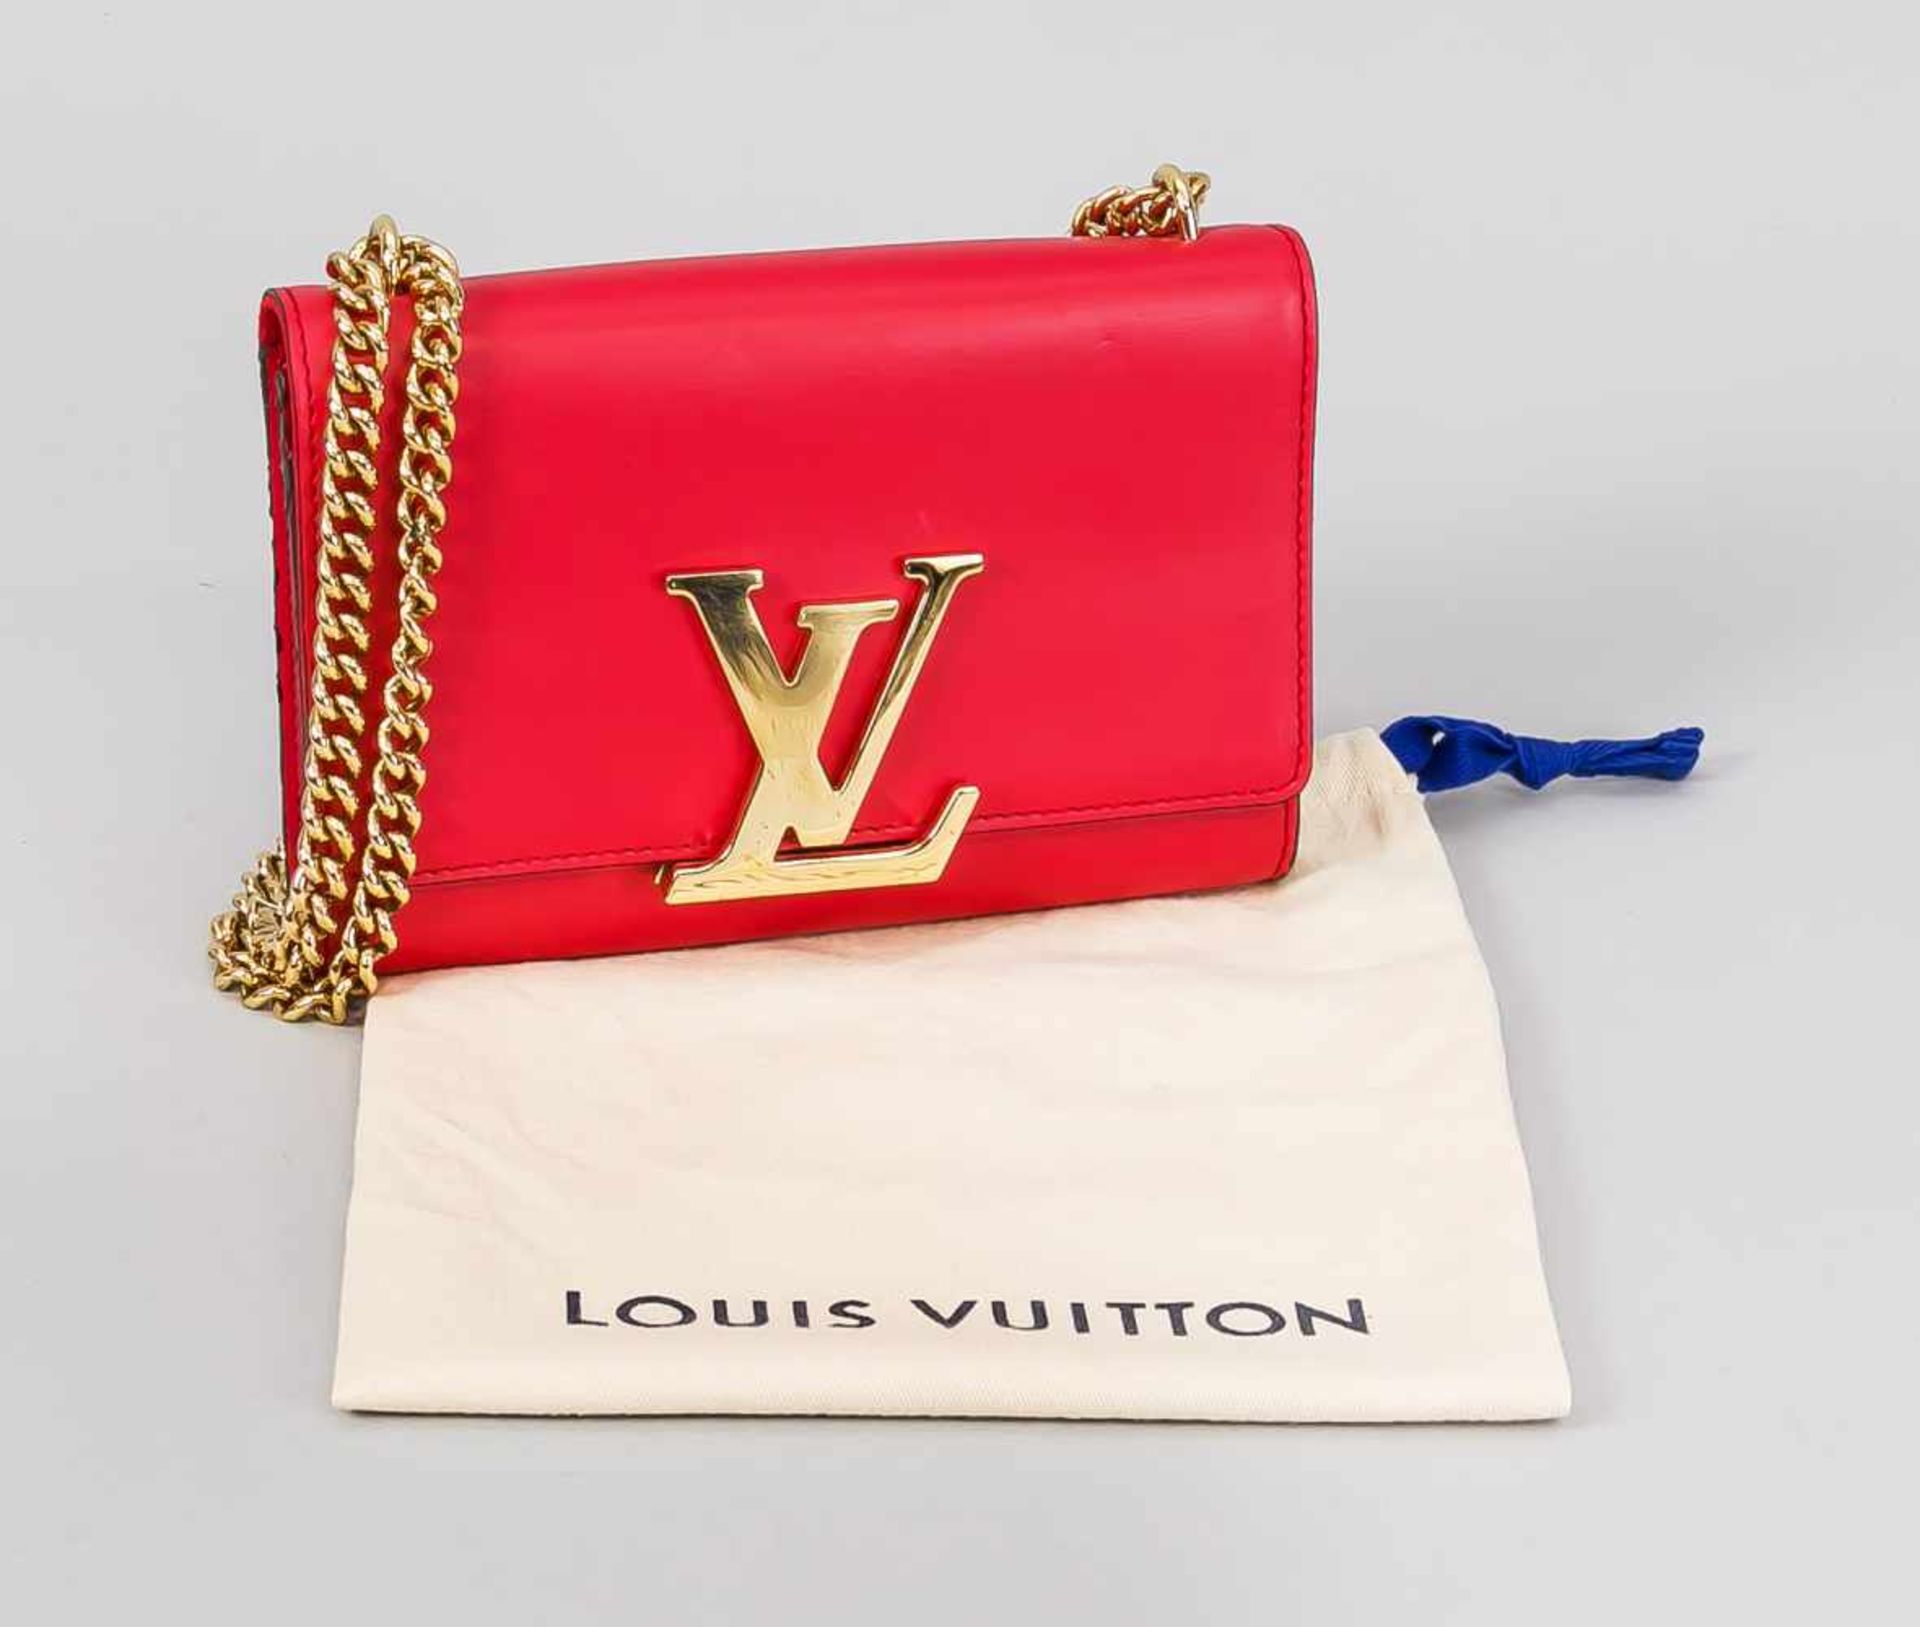 Louis Vuitton Handtasche Louise in Rot, 21. Jh., mit Original Rechnung LV-Store München